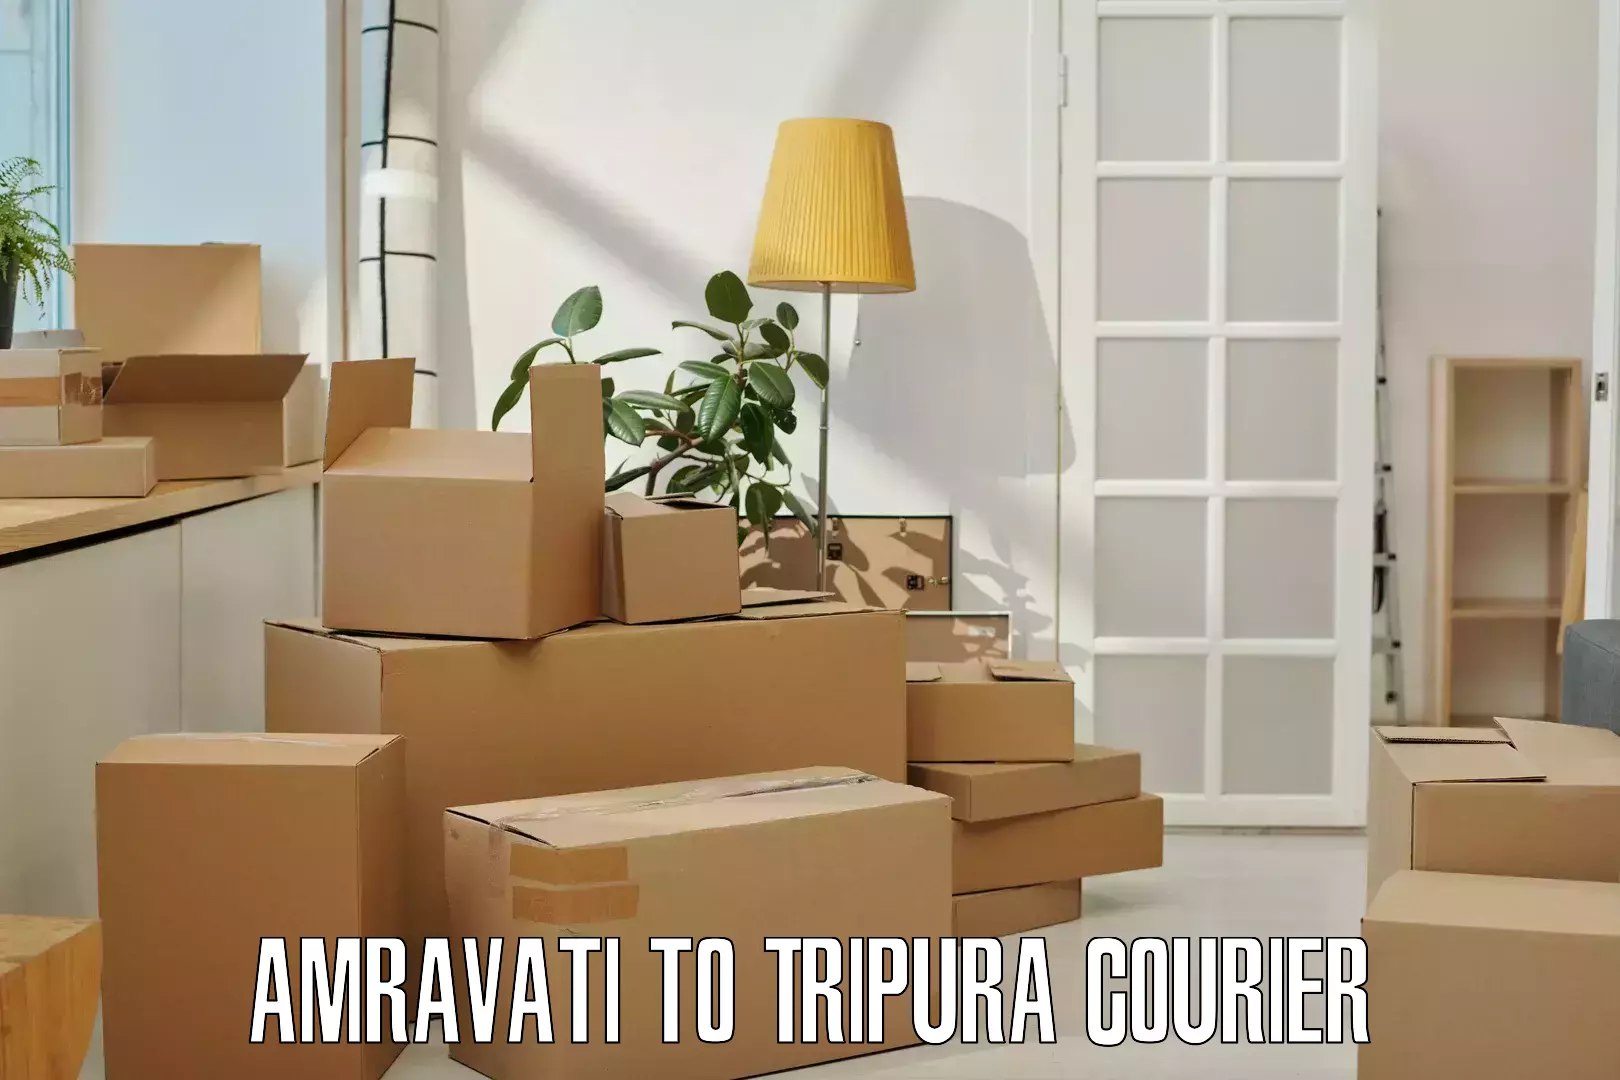 Premium courier solutions Amravati to Tripura